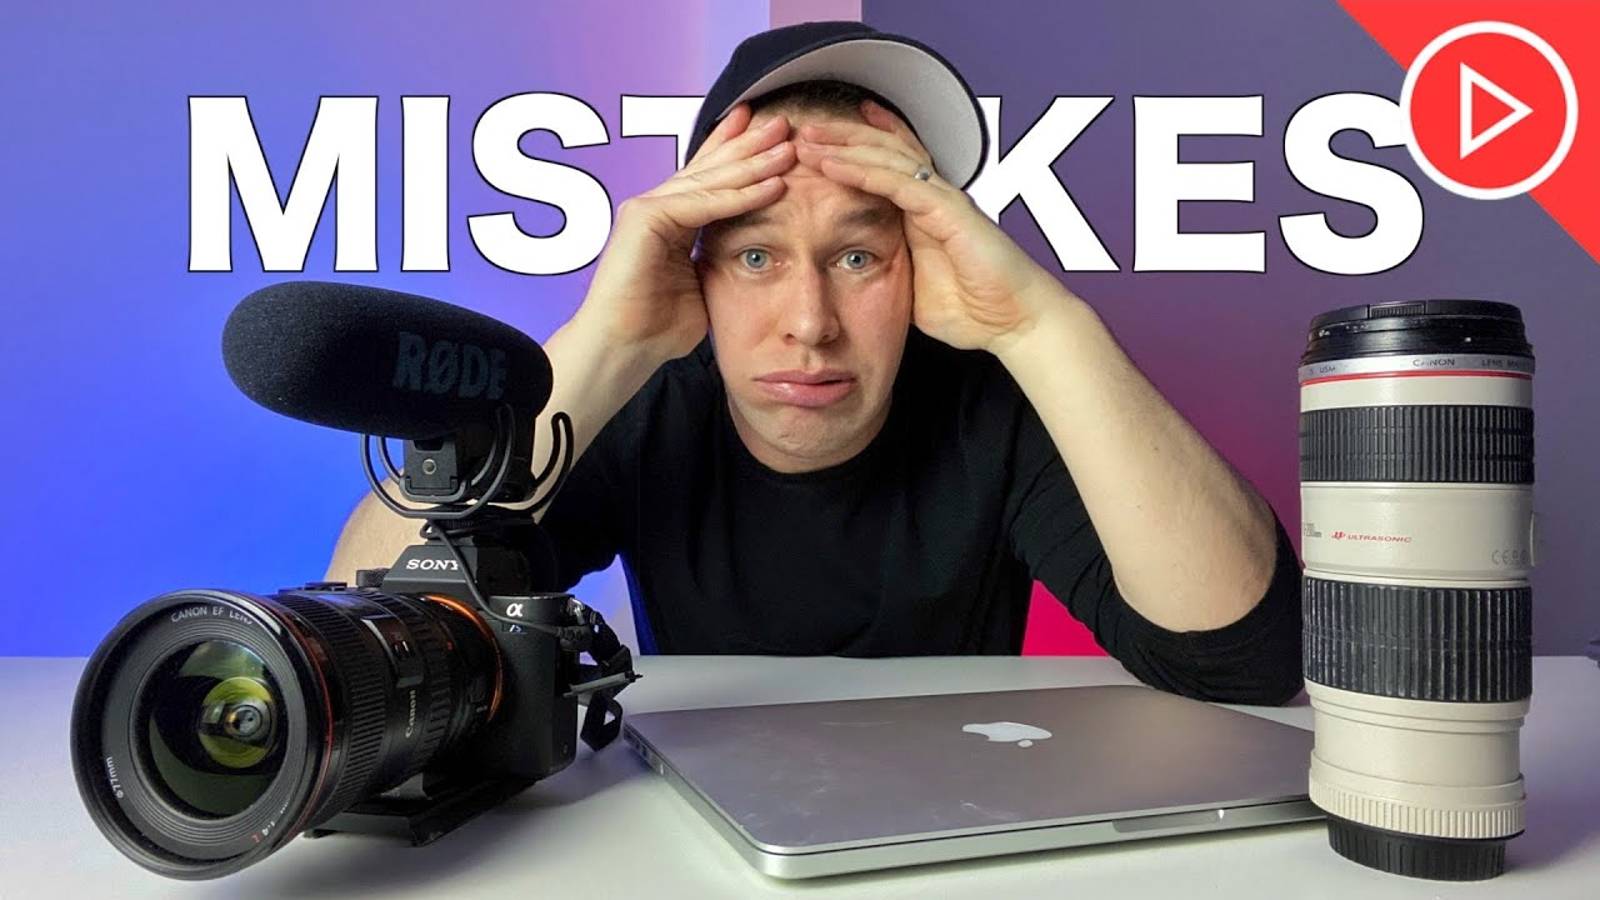 10 ошибок видеосъемки: как их исправить
Избегайте и советы для начинающих